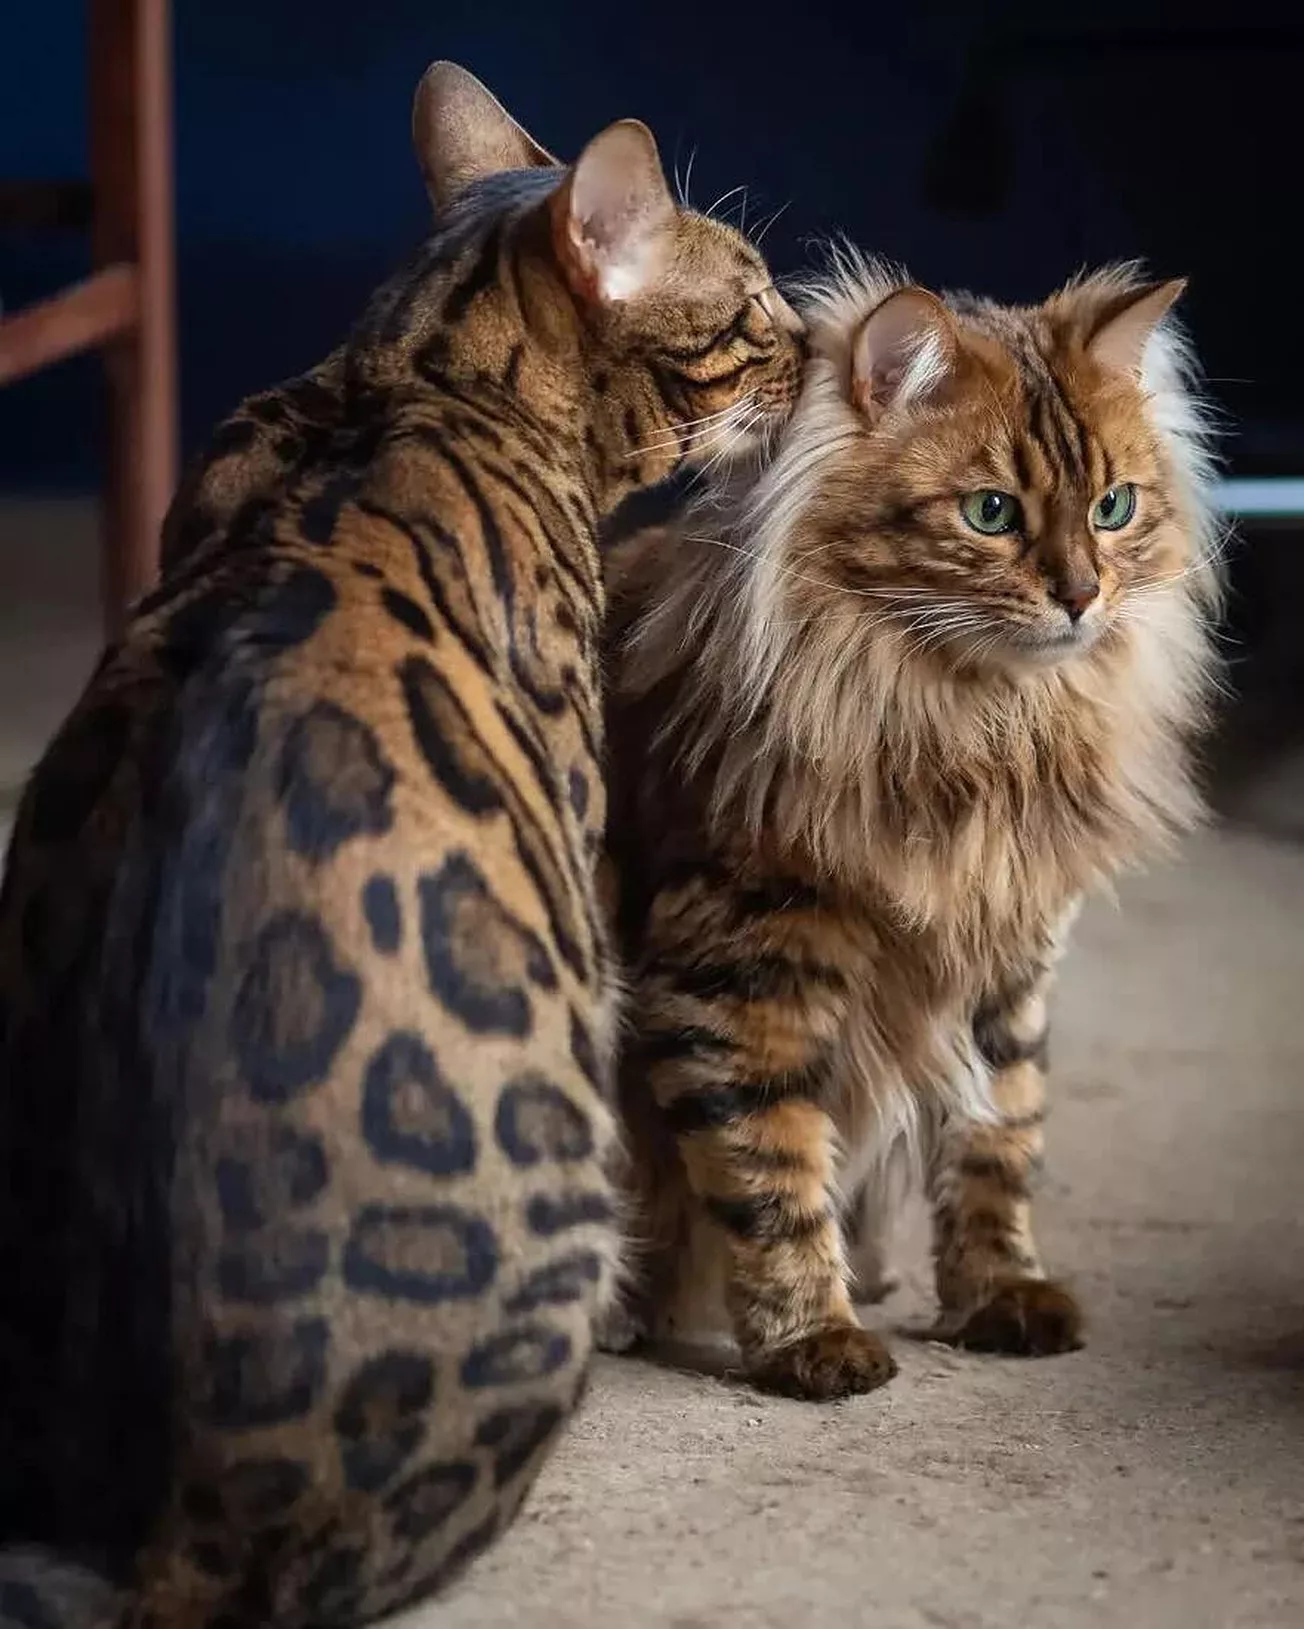 Cezar, pisica leu şi Borys prietenul sau de rasa bengaleza. foto credit Wojtek Czachurski